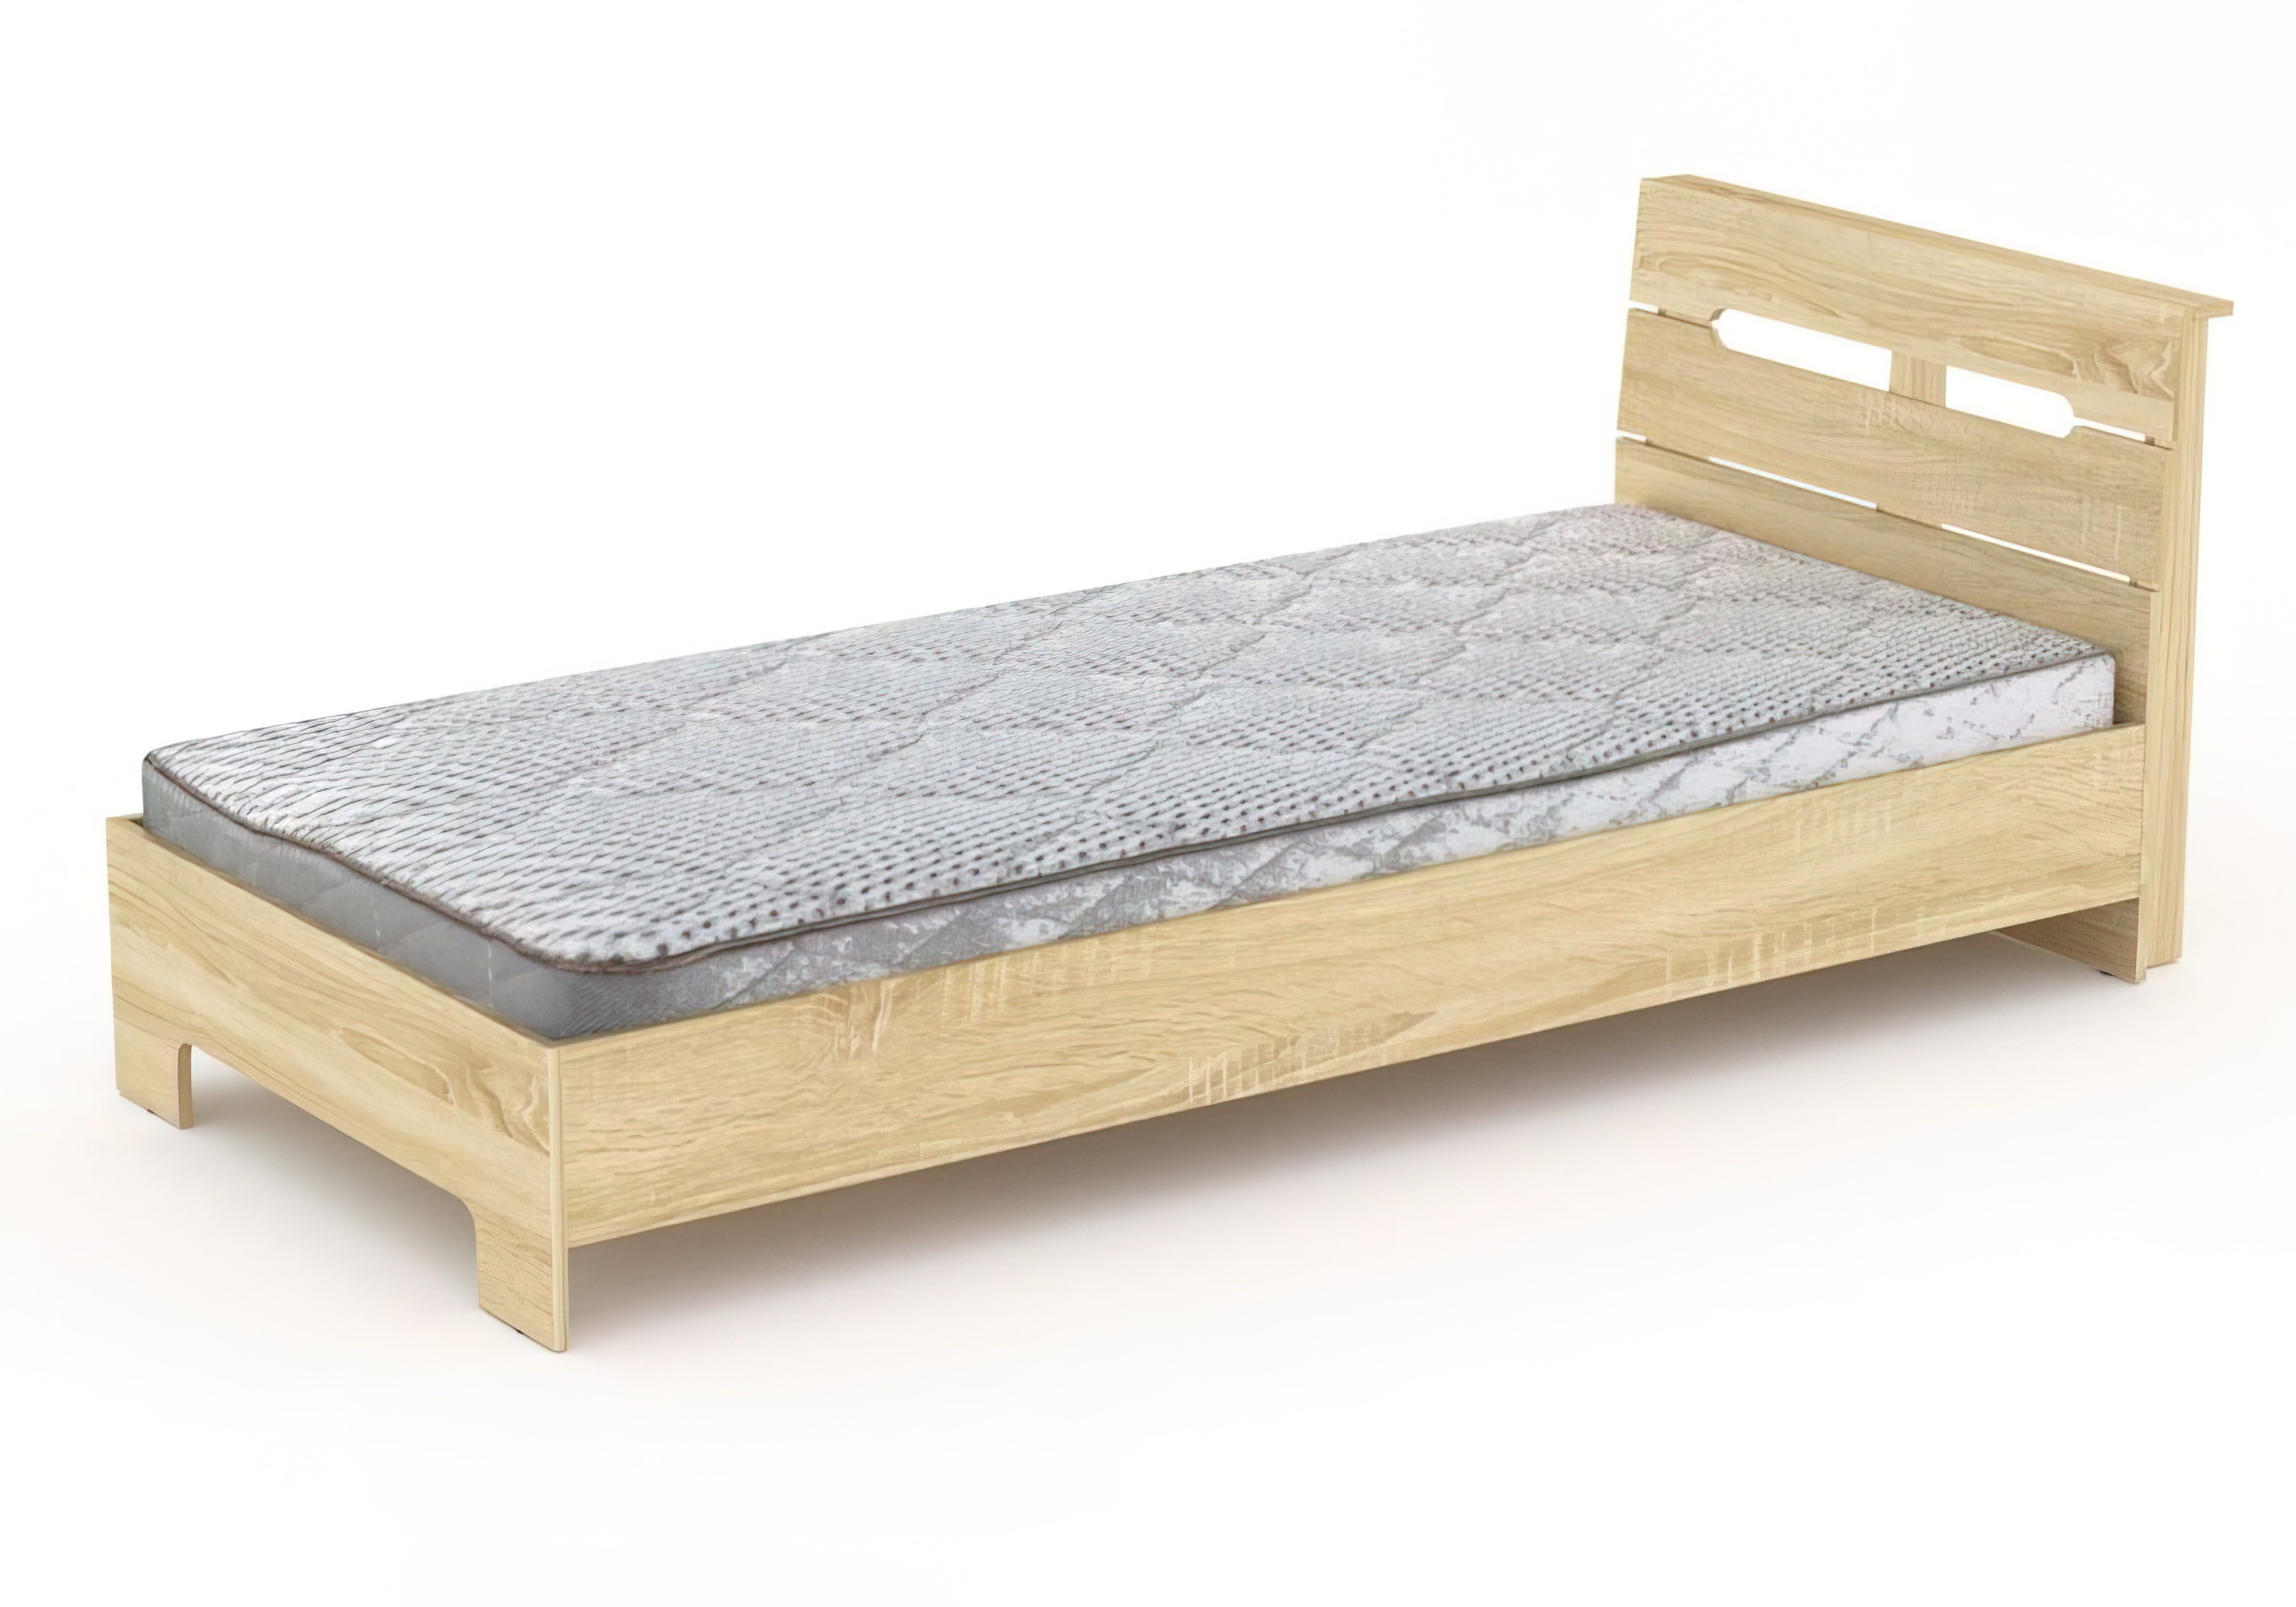  Купить Односпальные кровати Кровать односпальная "Стиль 90" Компанит